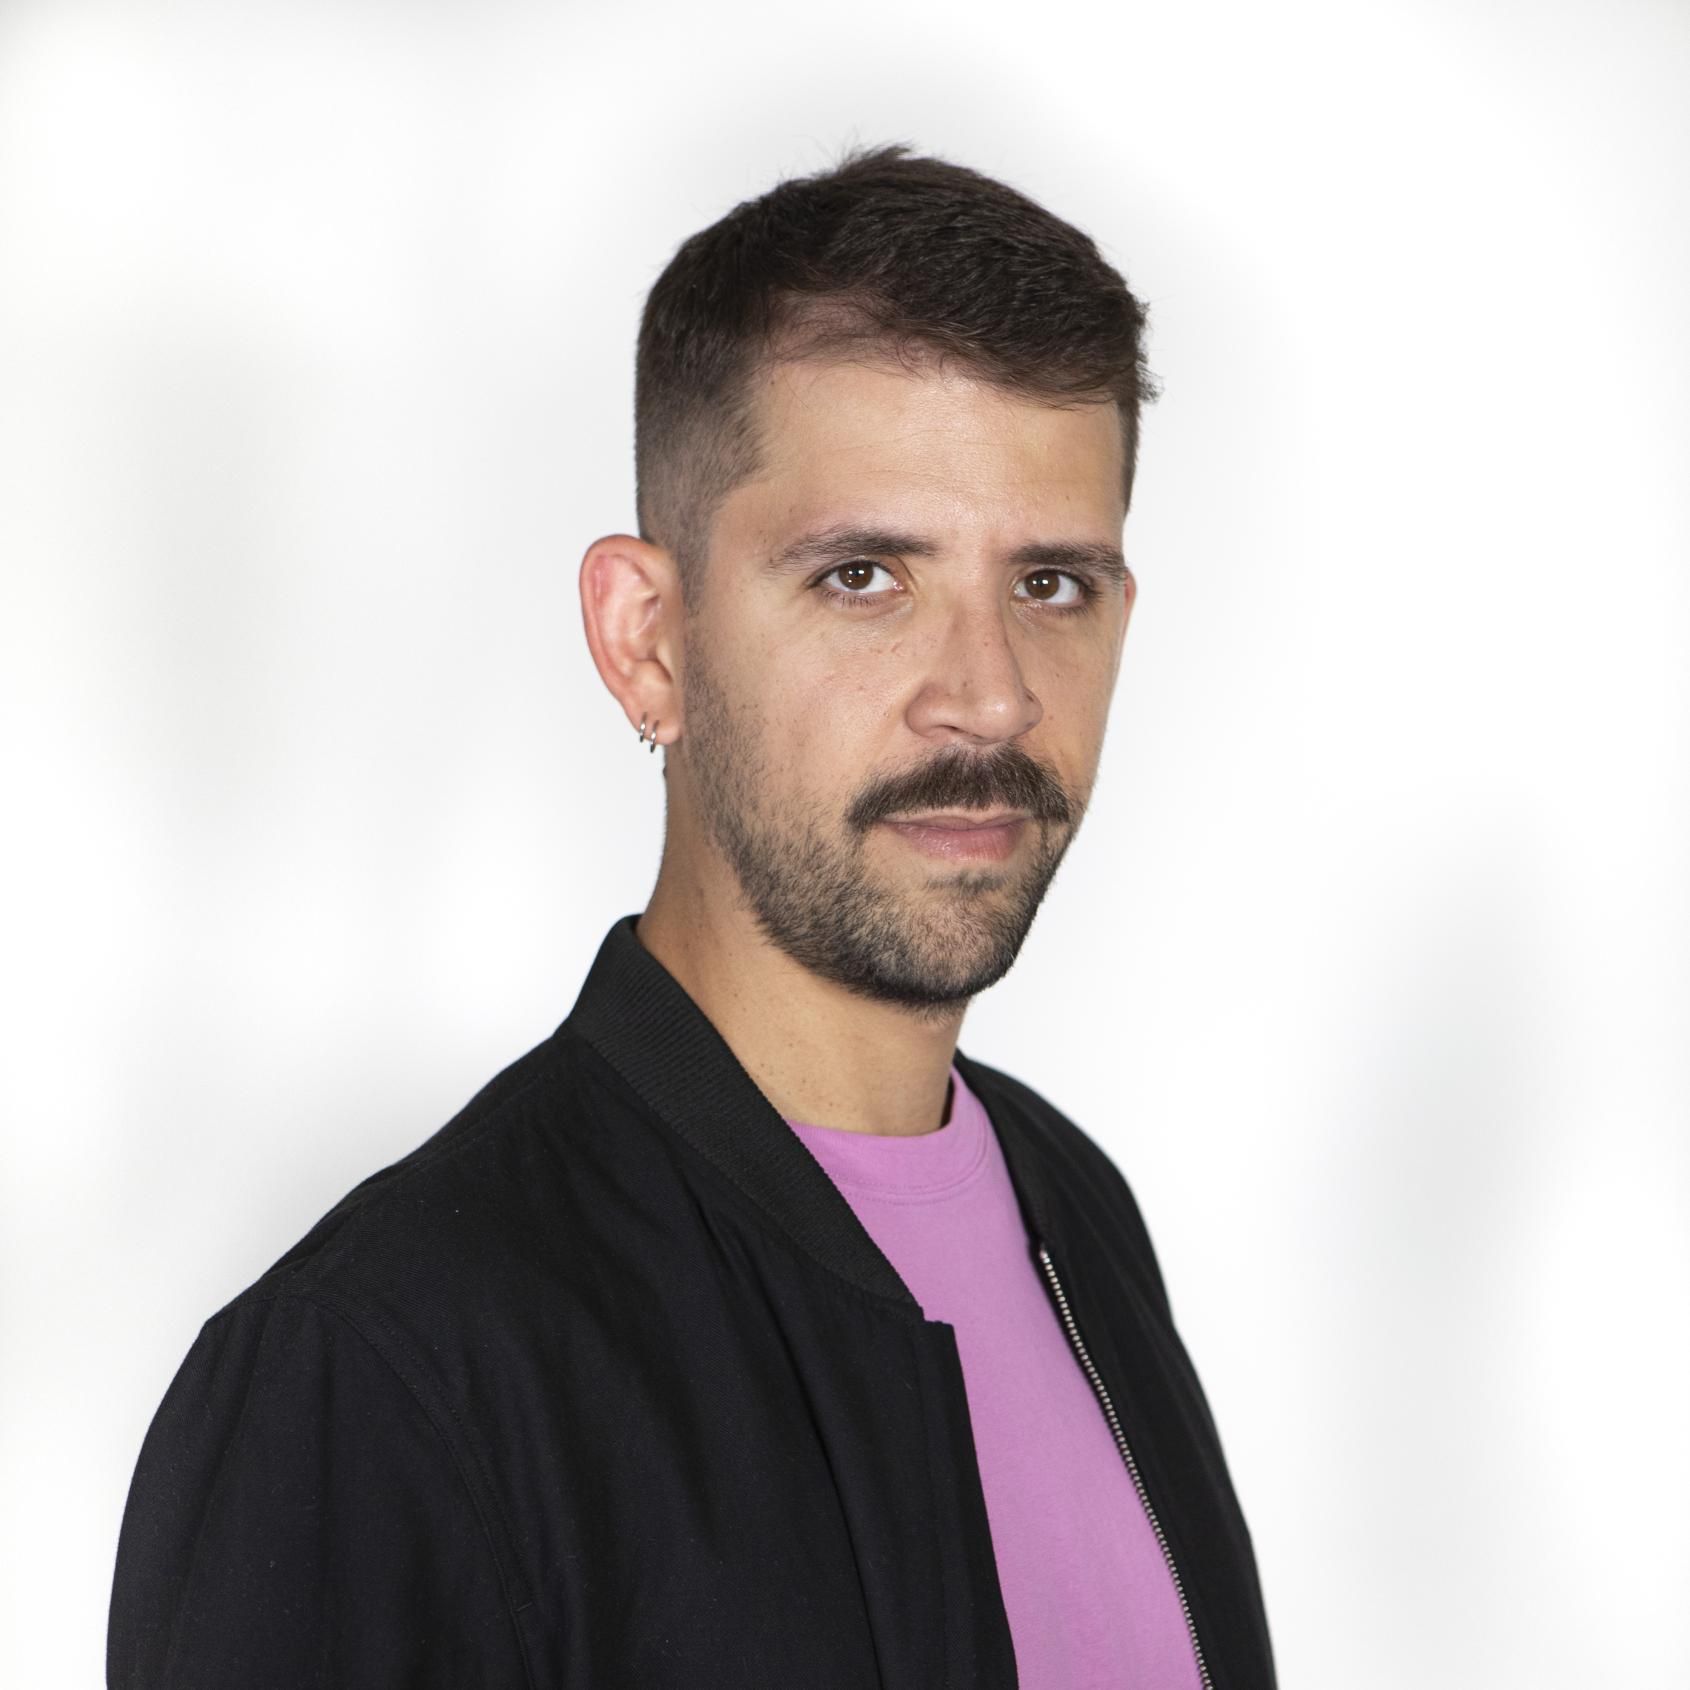 Dr. Marco Antonio Teixeira